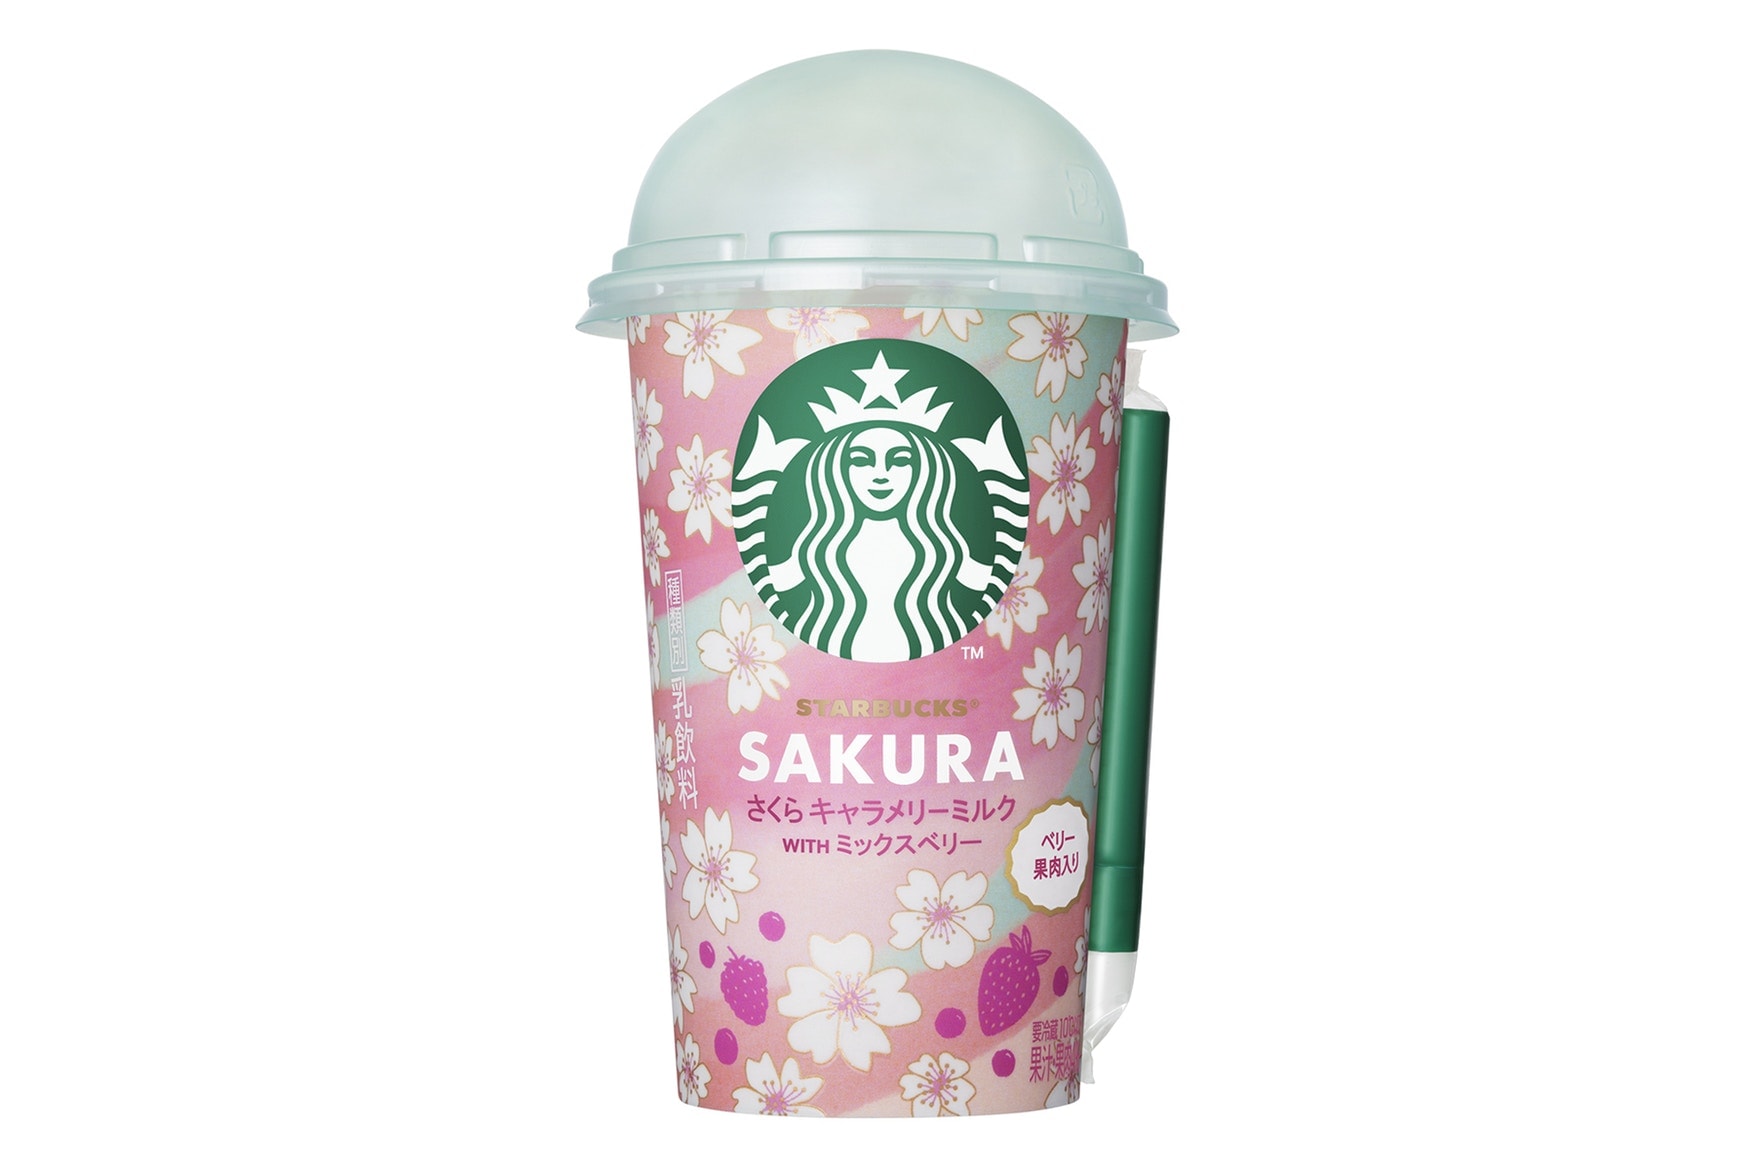 少女心噴發 Starbucks 為櫻花季推出了千禧粉星冰樂